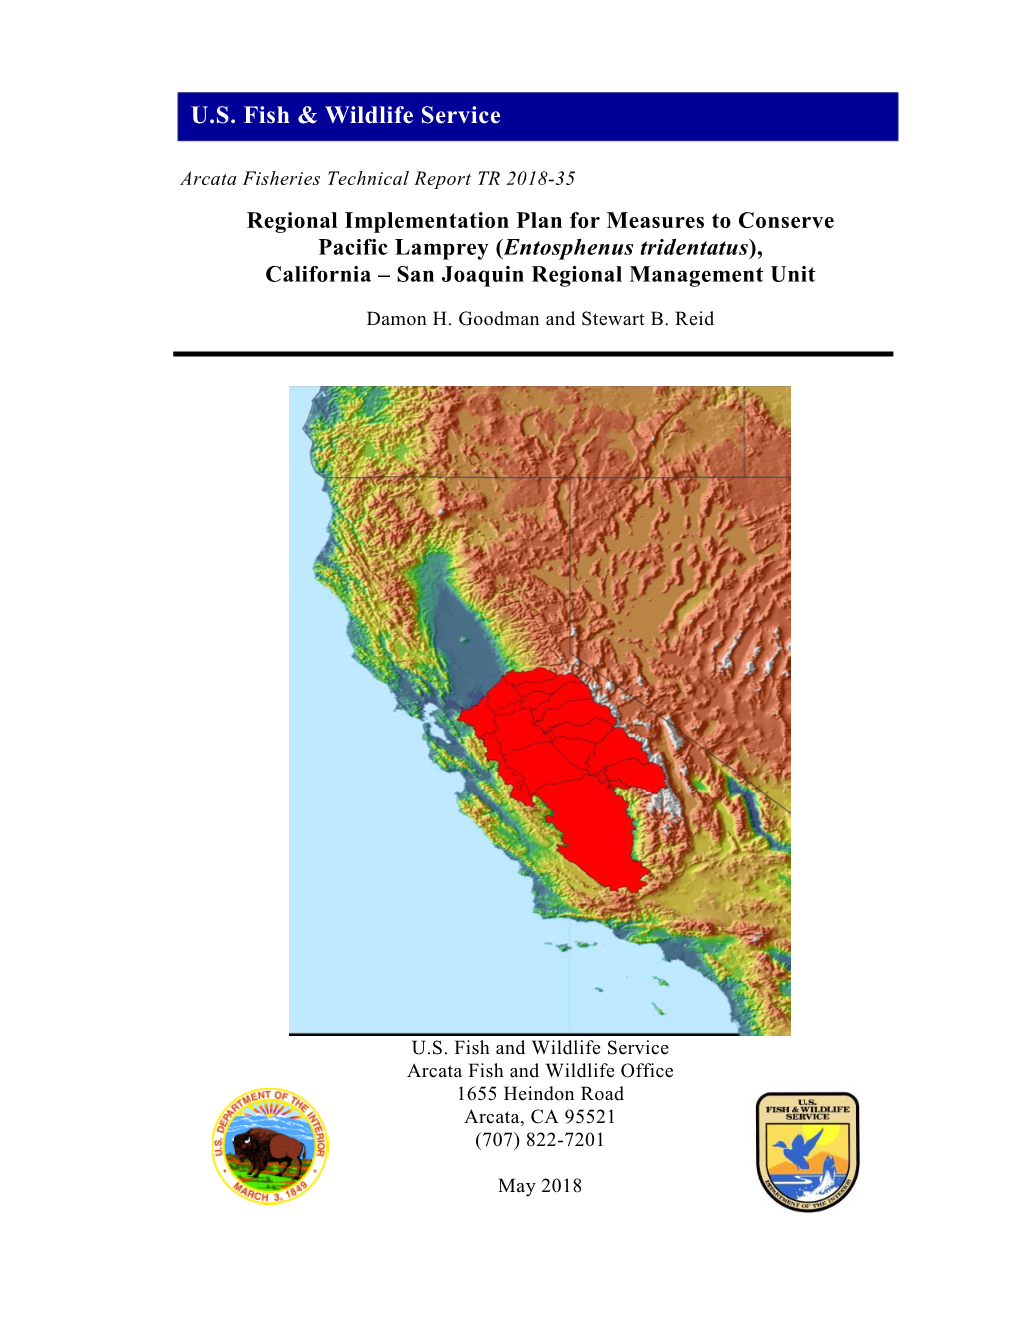 (Entosphenus Tridentatus), California – San Joaquin Regional Management Unit